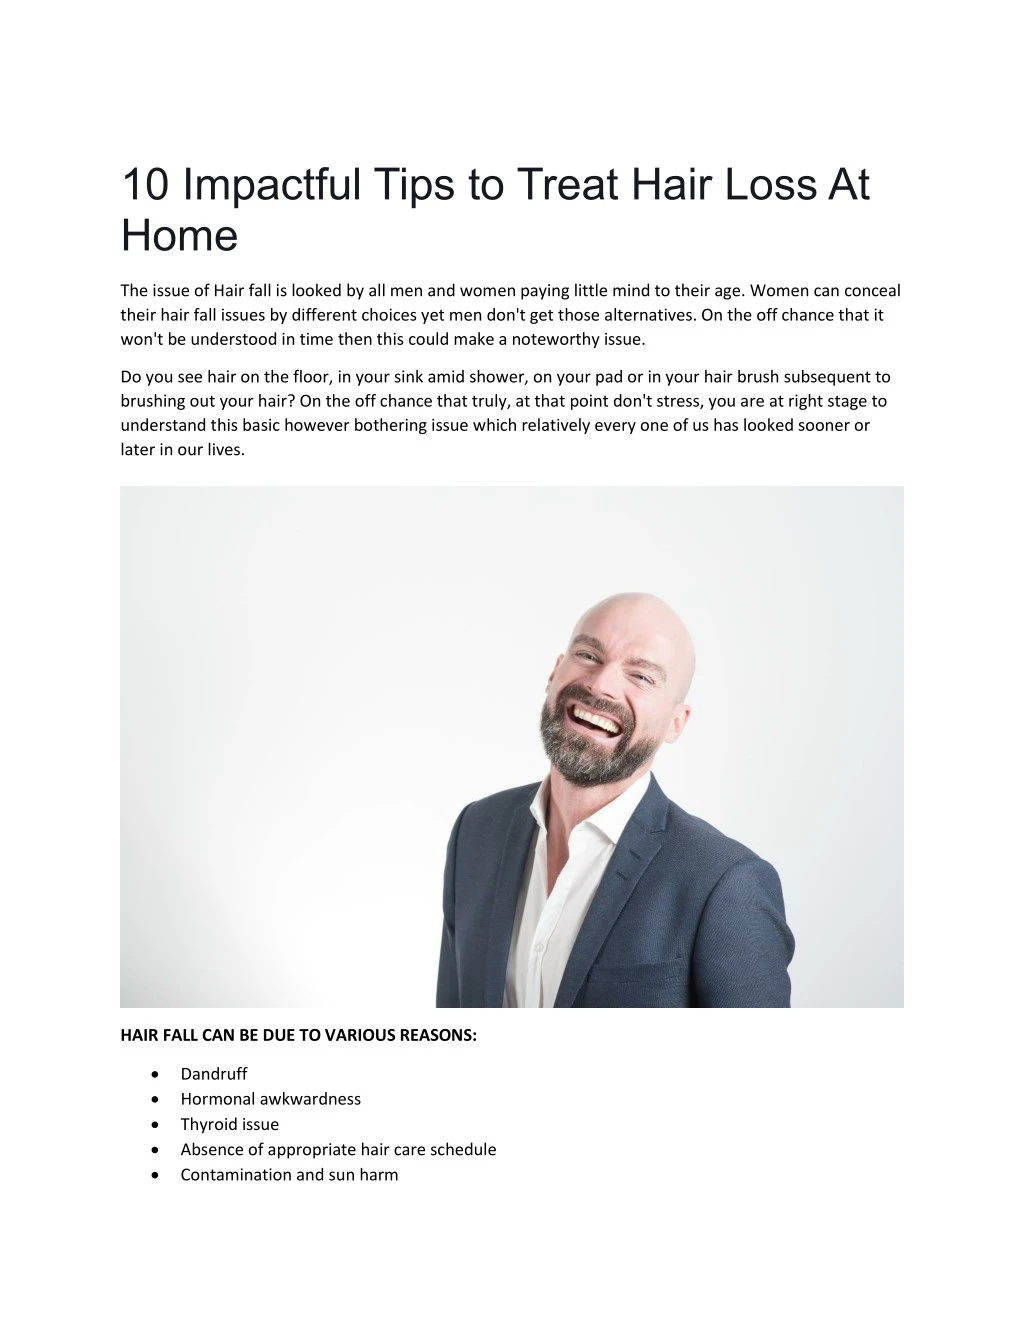 10 impactful tips to treat hair loss at home